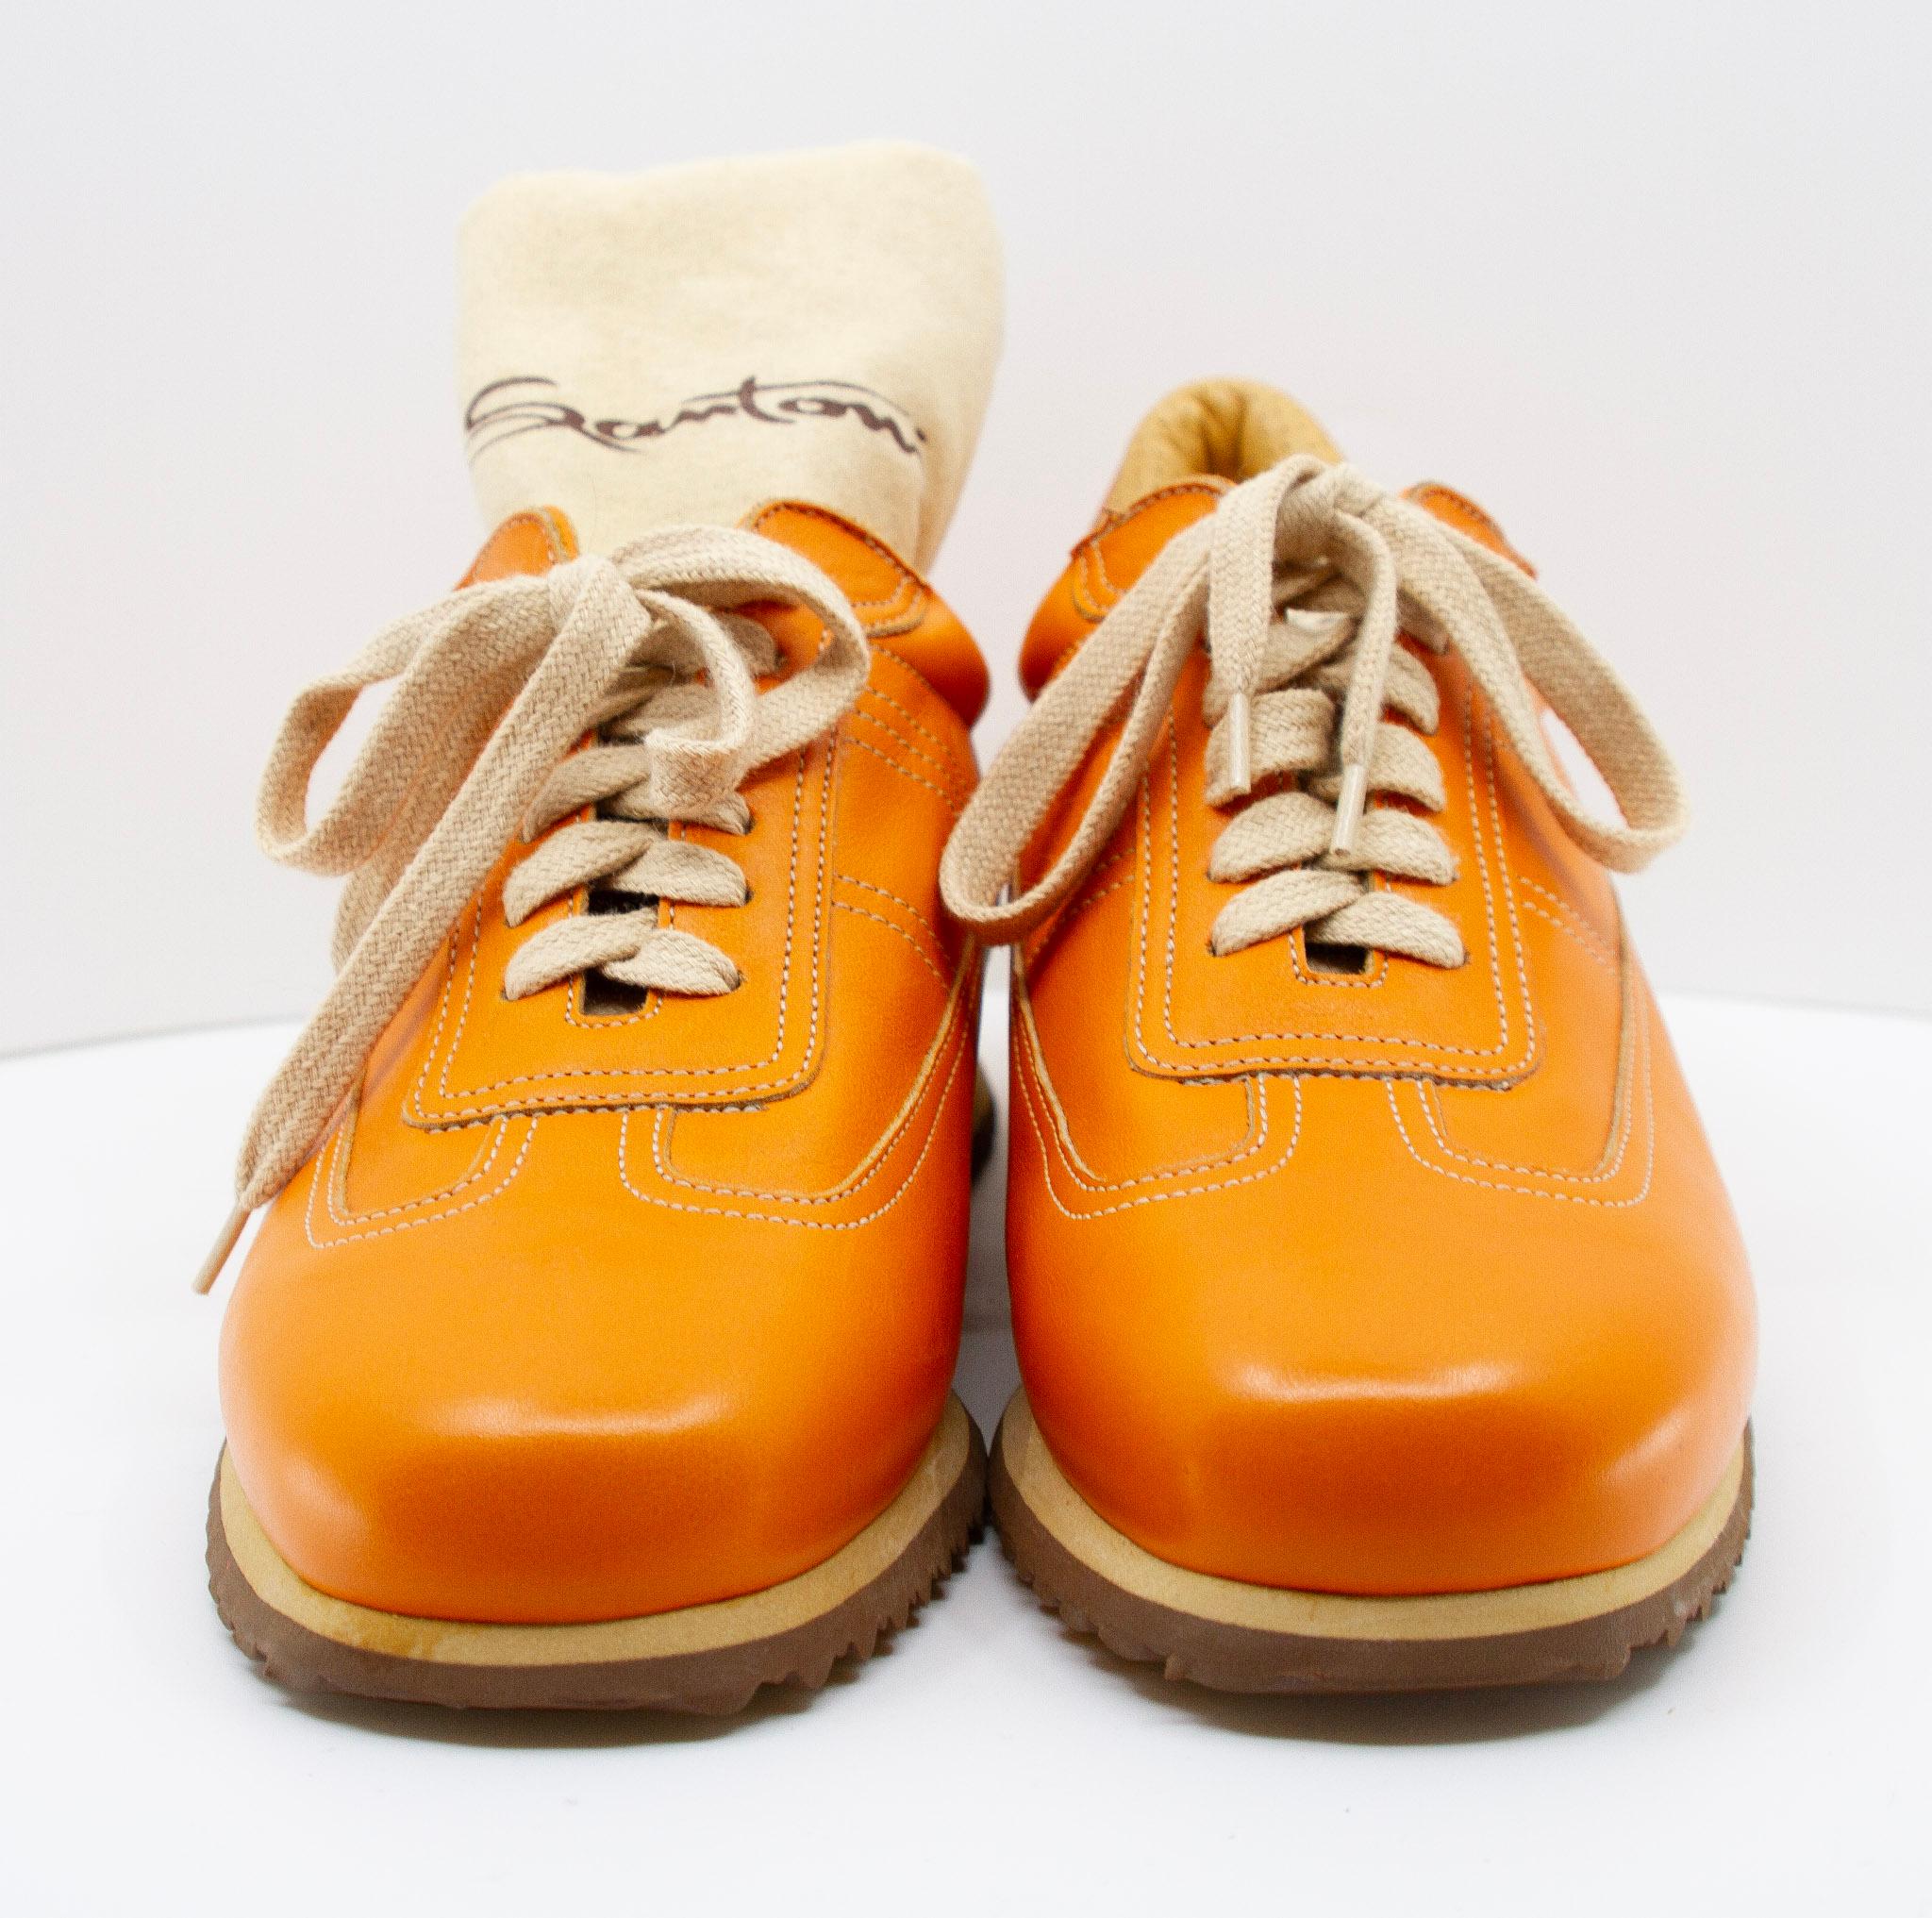  Baskets Santoni en cuir orange, en taille 35. Ces baskets de fabrication italienne présentent une tige en cuir orange, des bouts arrondis, des coutures contrastées, des lacets blanc cassé, des semelles intérieures en cuir et des semelles